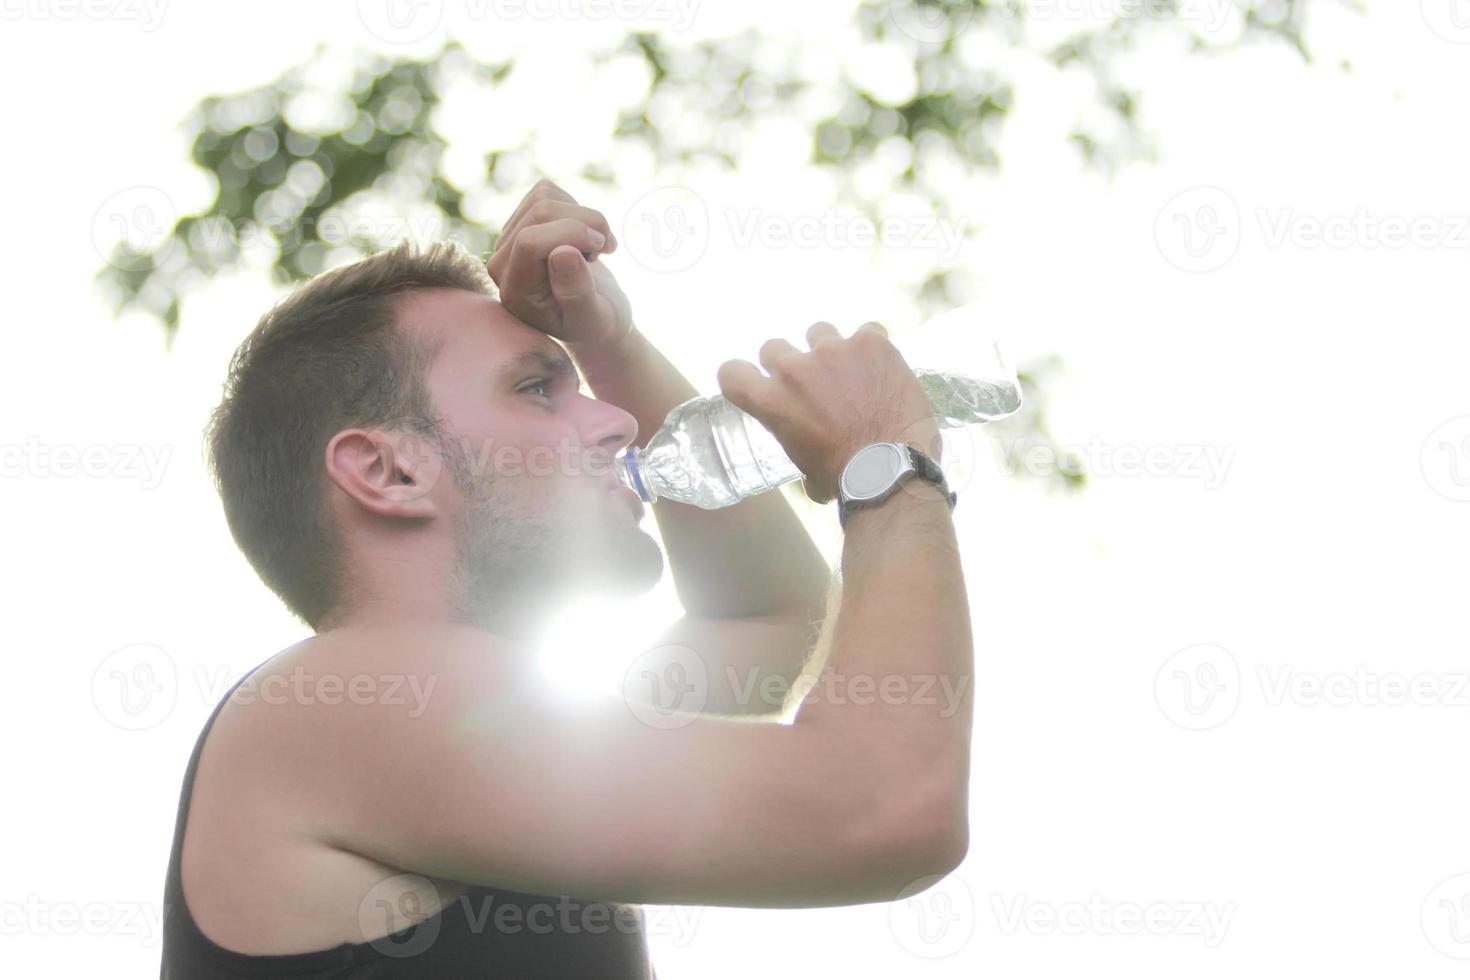 corredor masculino bebiendo agua mineral foto